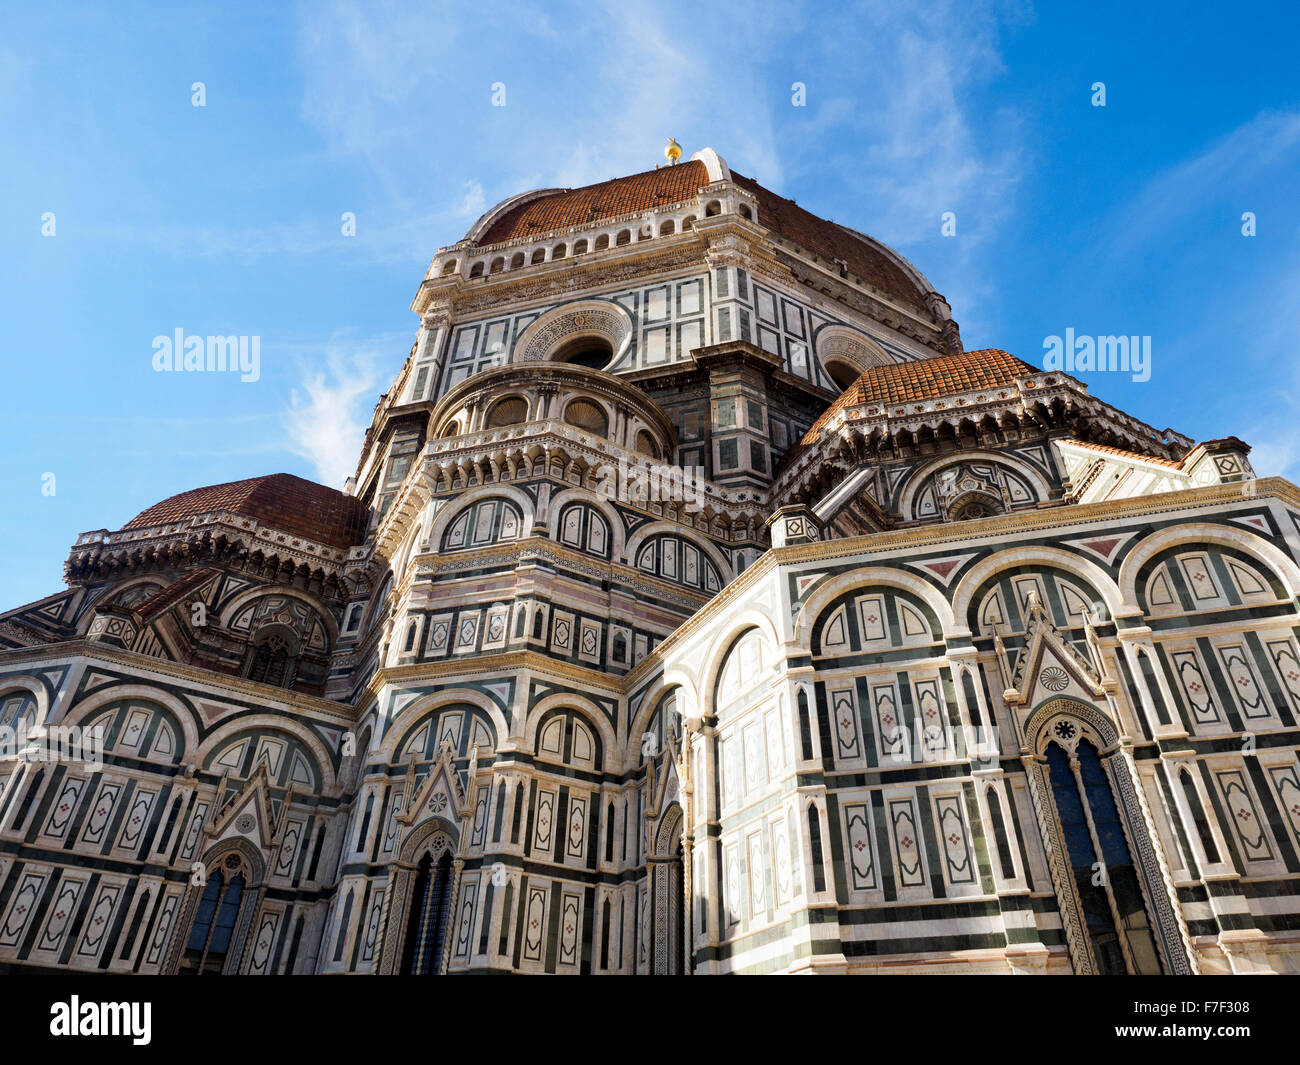 Giottos Kuppel der Cattedrale di Santa Maria del Fiore - Florenz, Italien Stockfoto